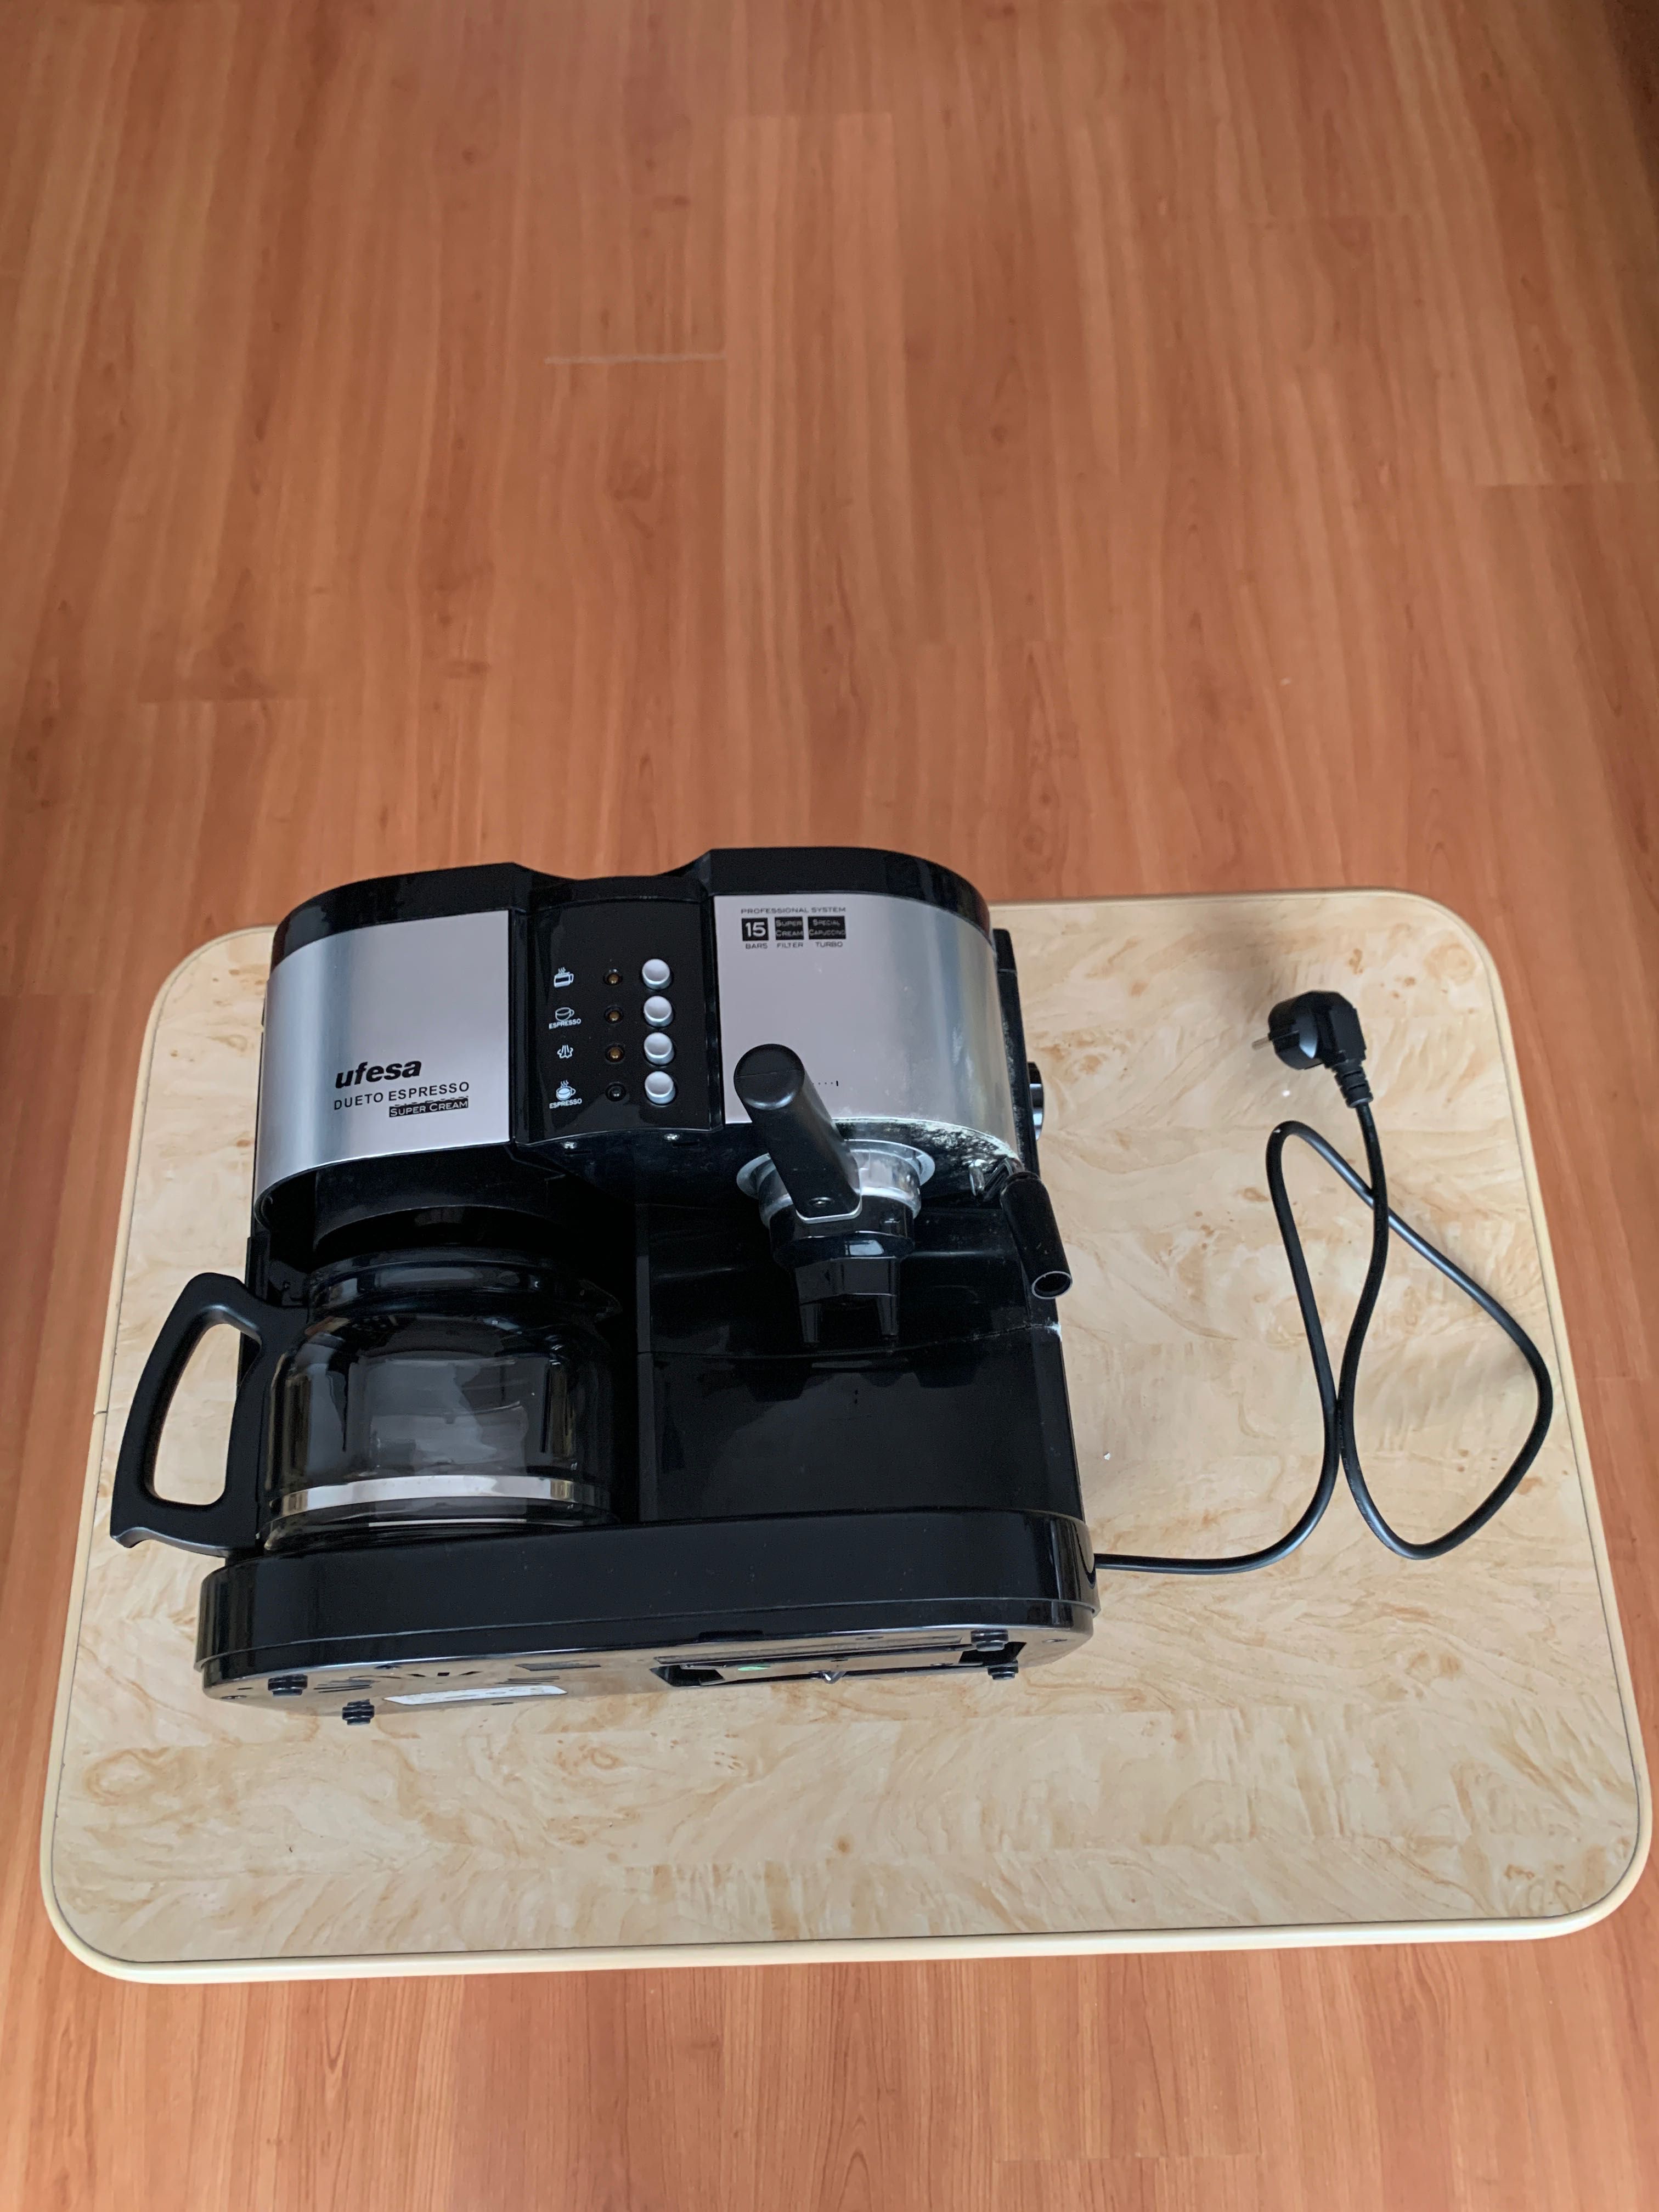 Espressor Ufesa ck7360 si toaster Ufesa sw7390